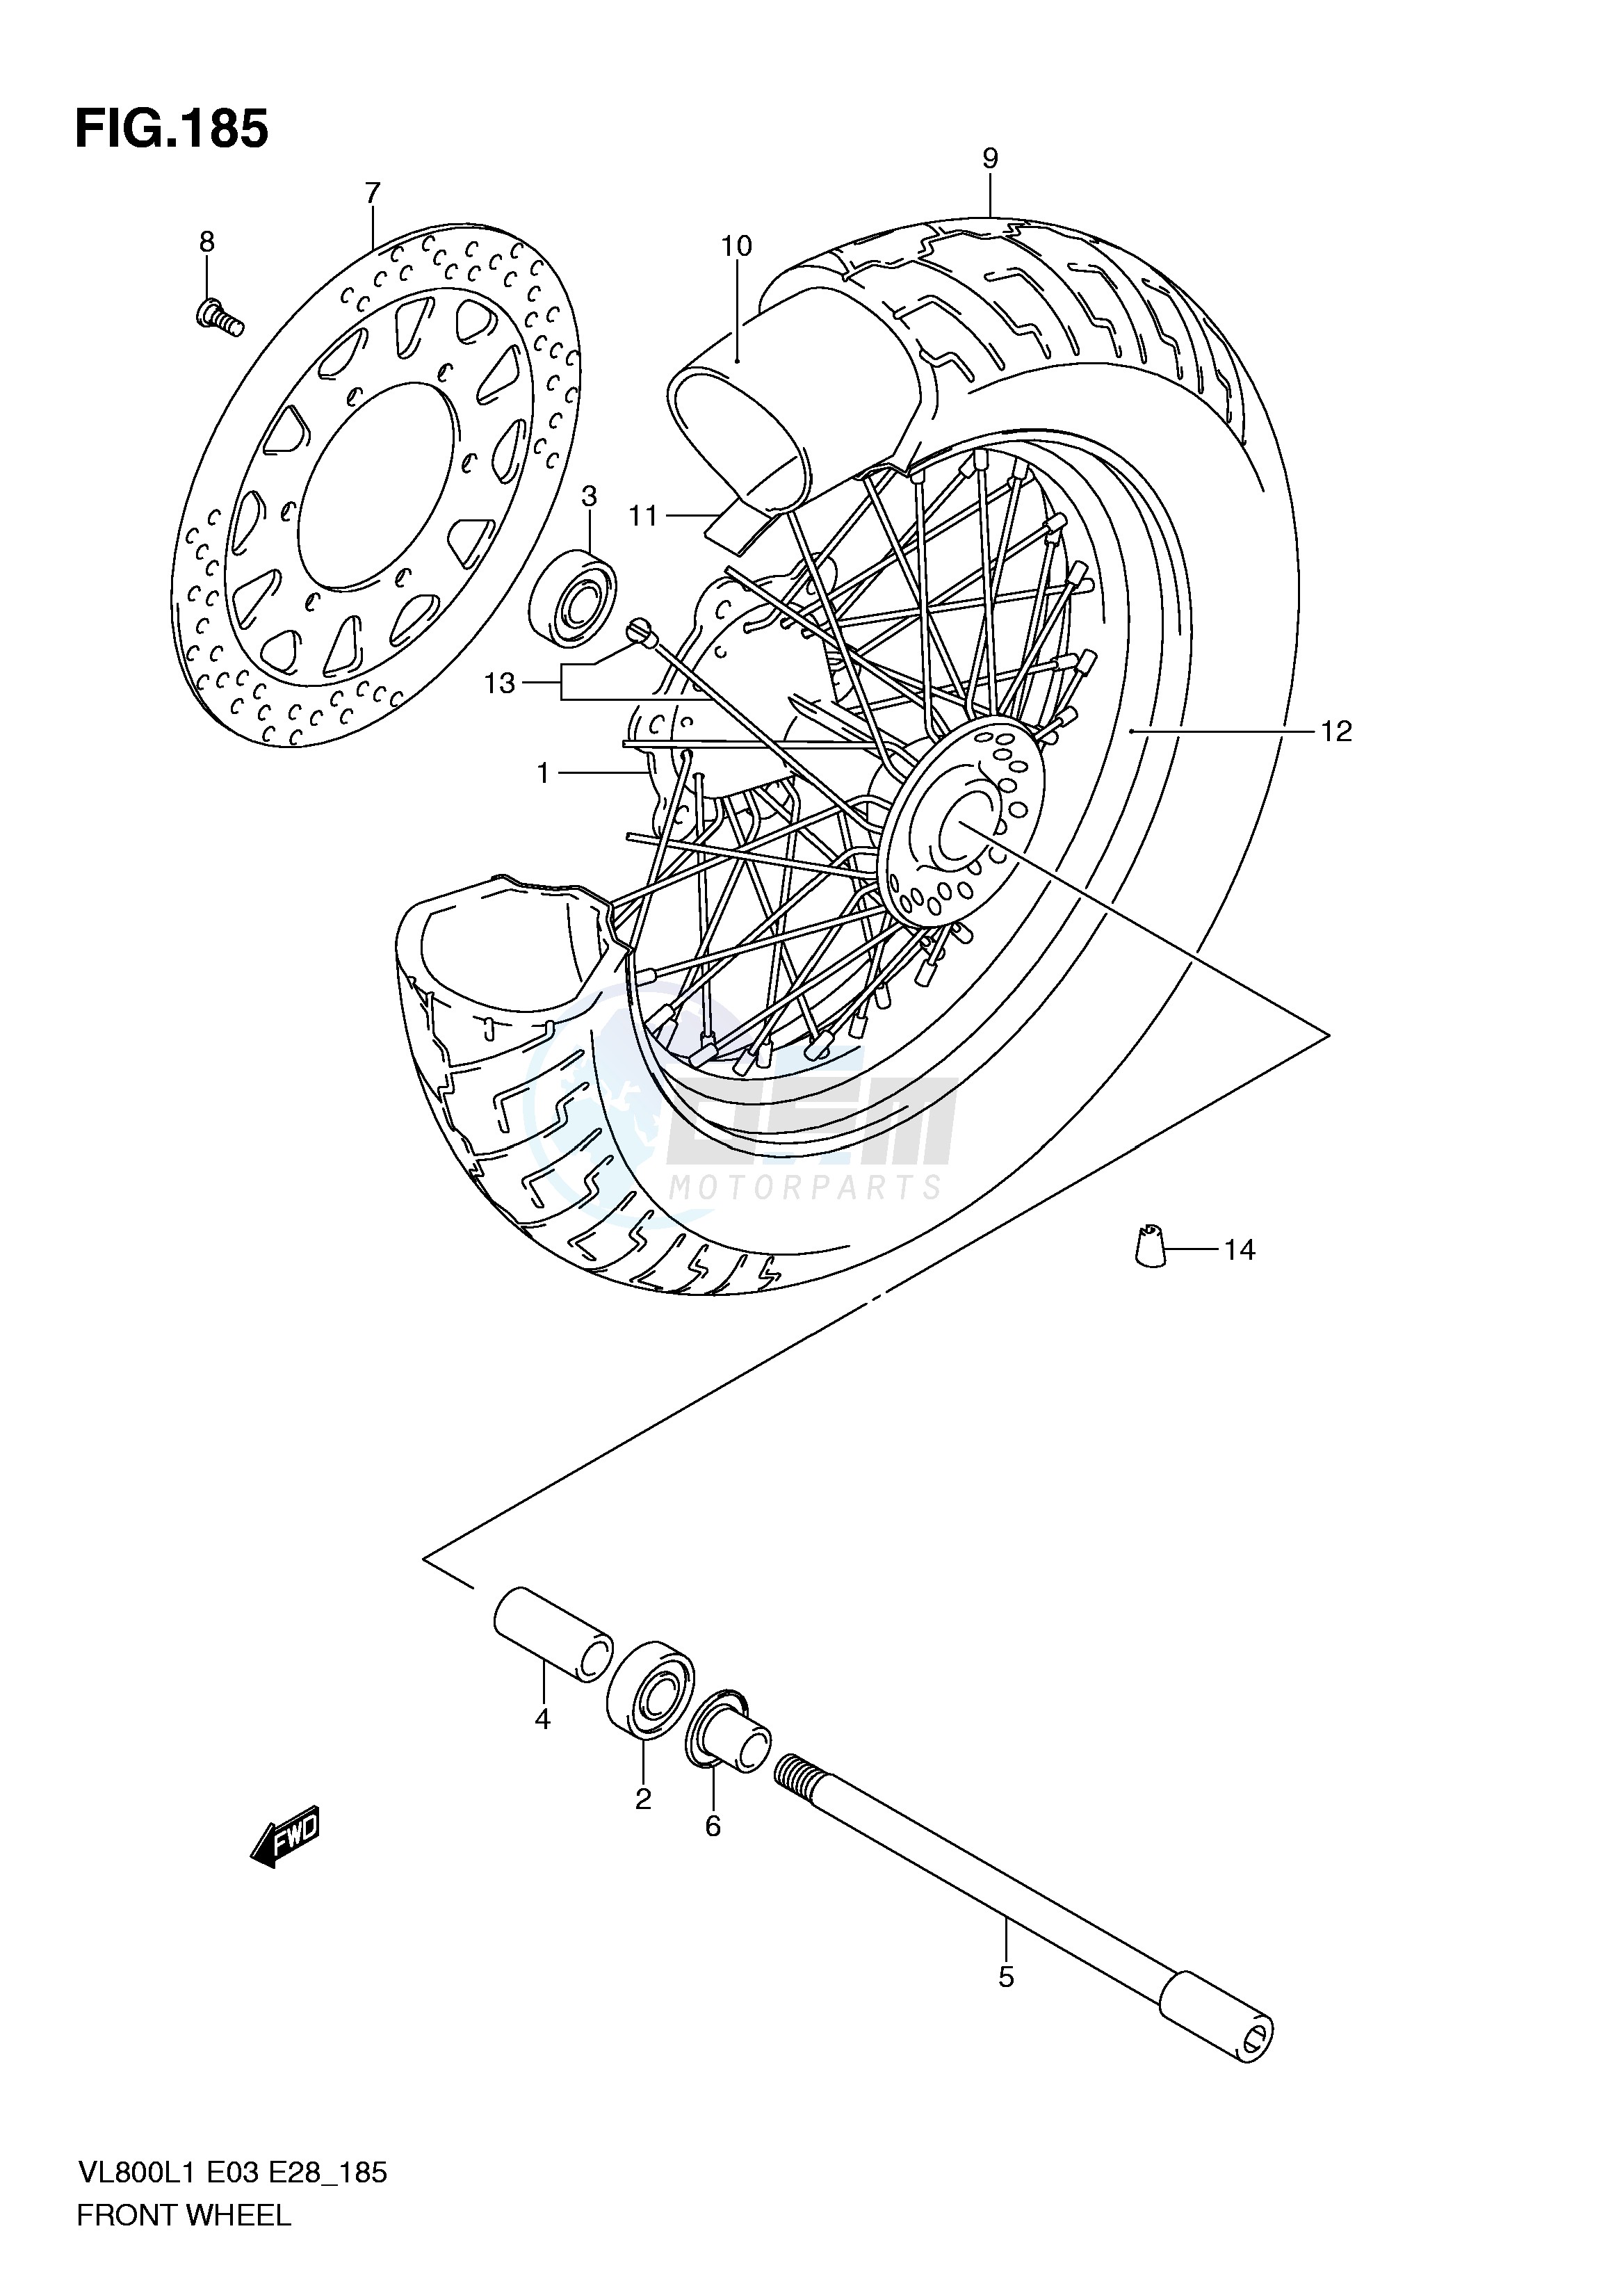 FRONT WHEEL (VL800L1 E33) blueprint